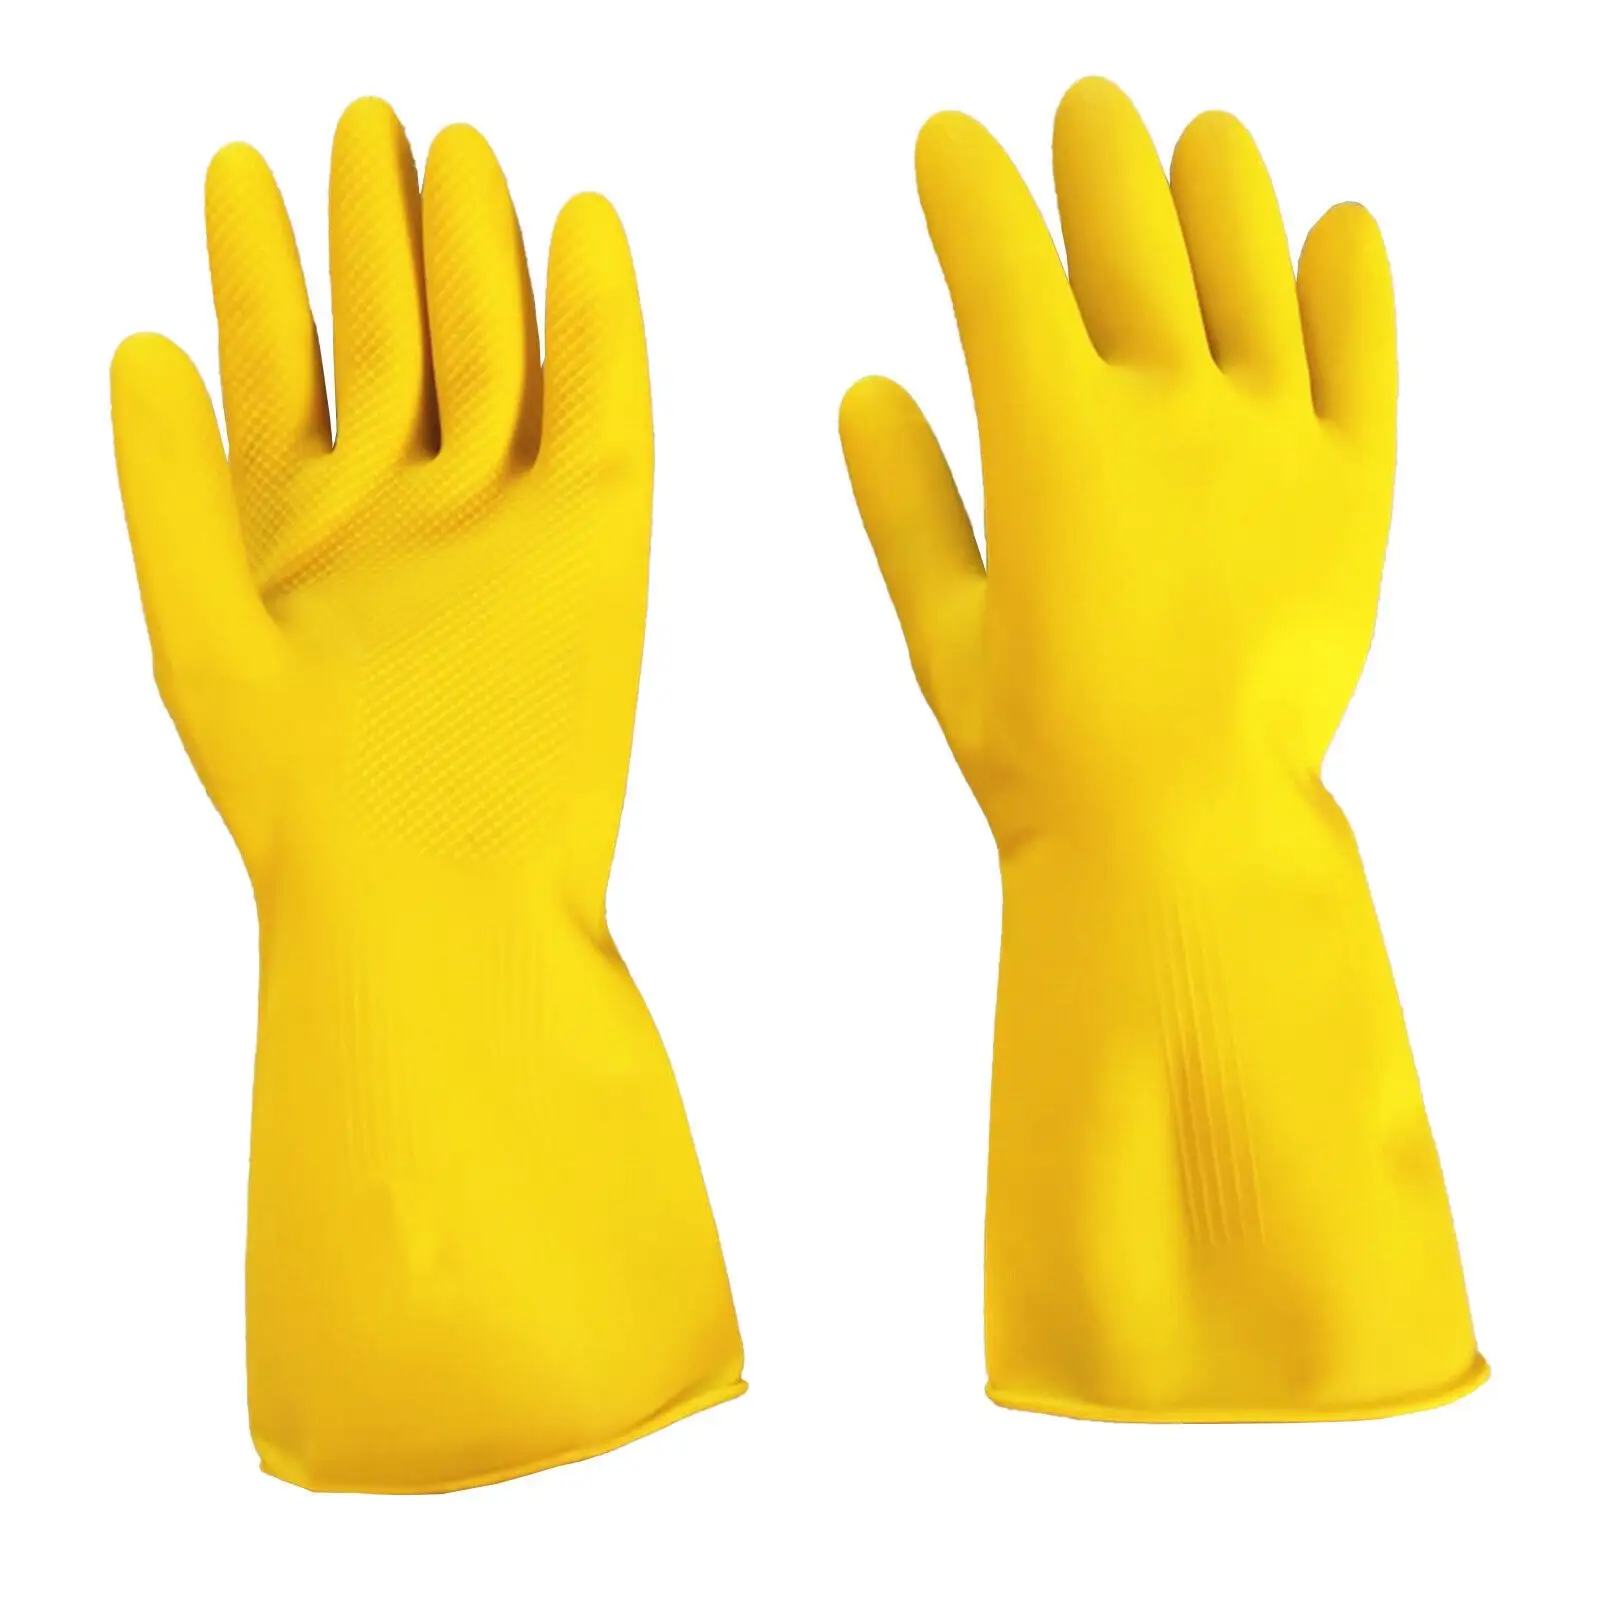 Durable Dish Washing Latex handschuhe rutsch feste verschleiß feste säure-alkali beständige Gummi handschuhe Hausarbeit Reinigungs handschuhe